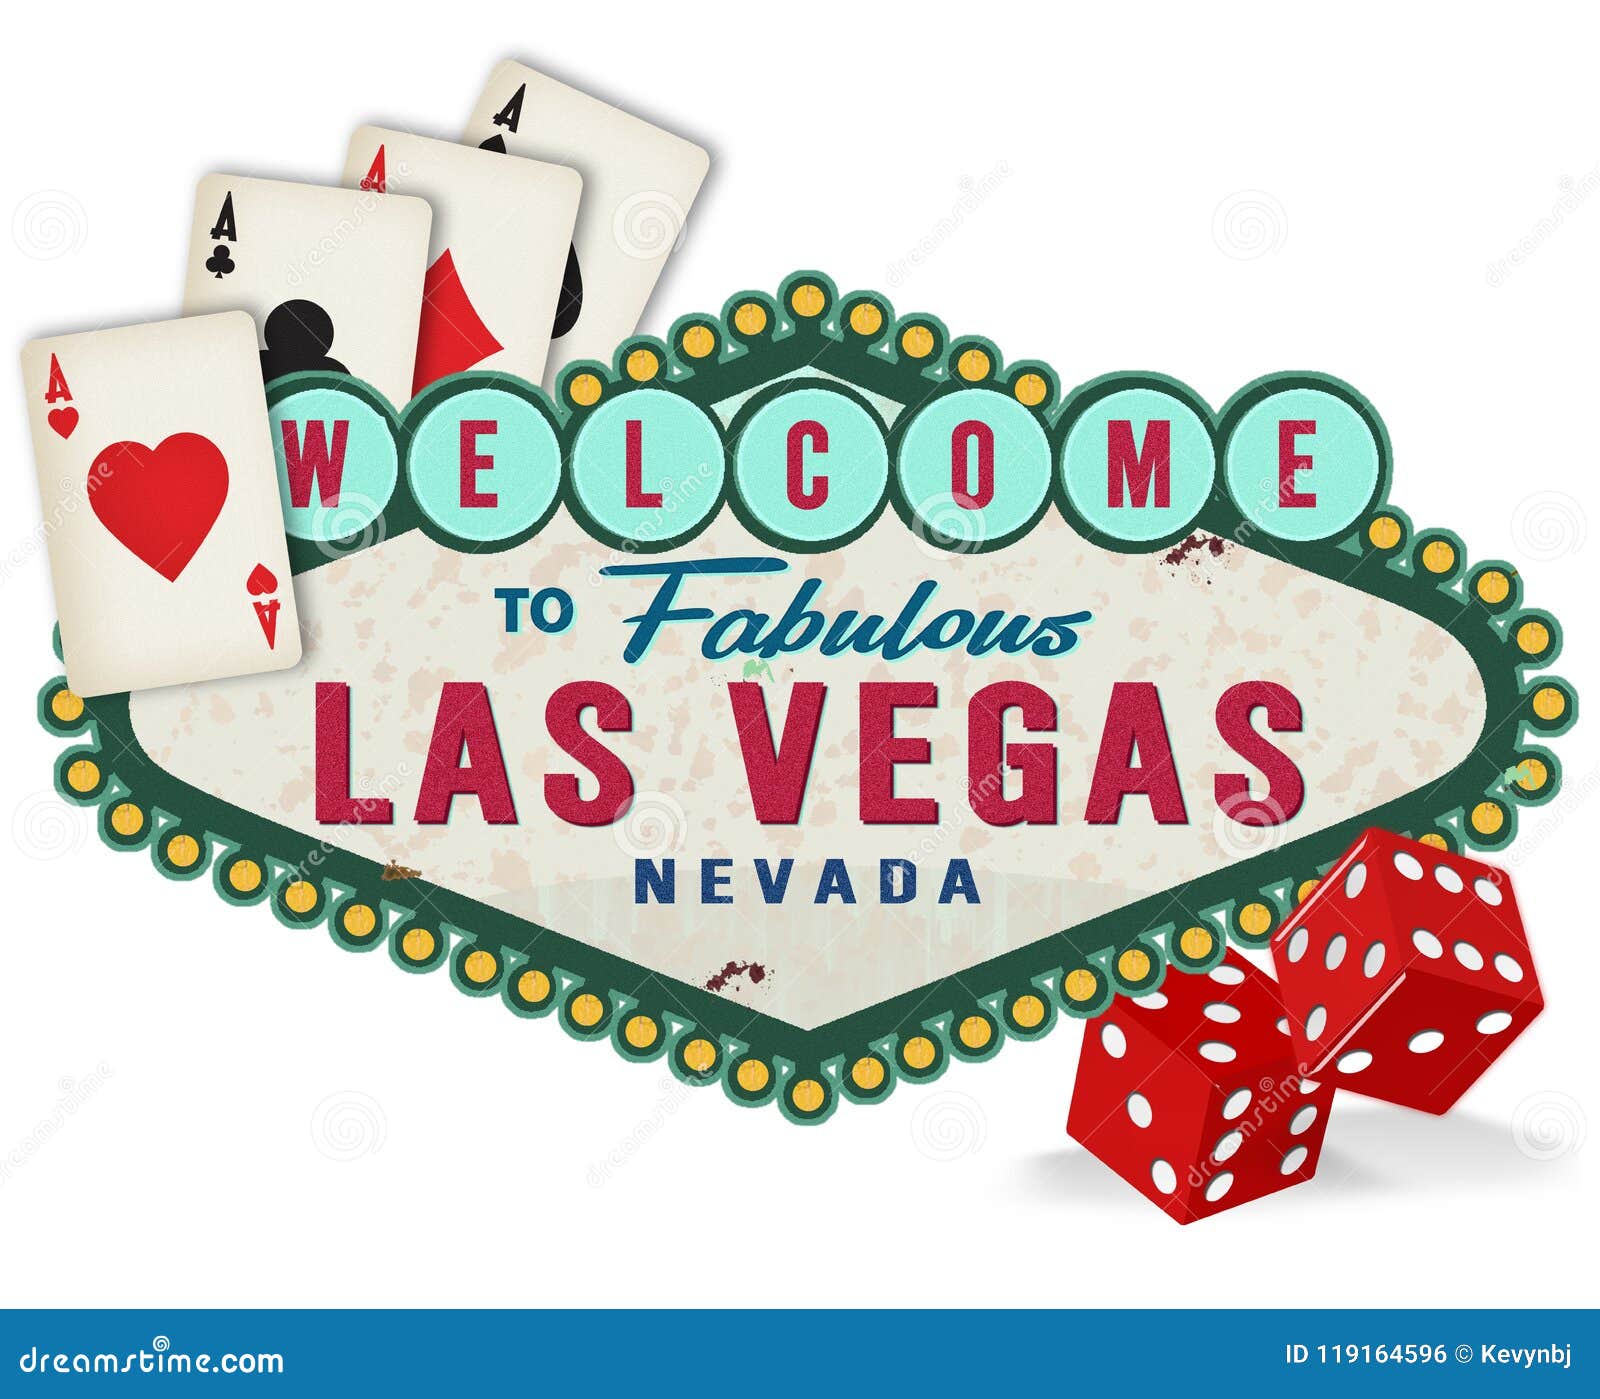 Las Vegas Sign Images - Free Download on Freepik